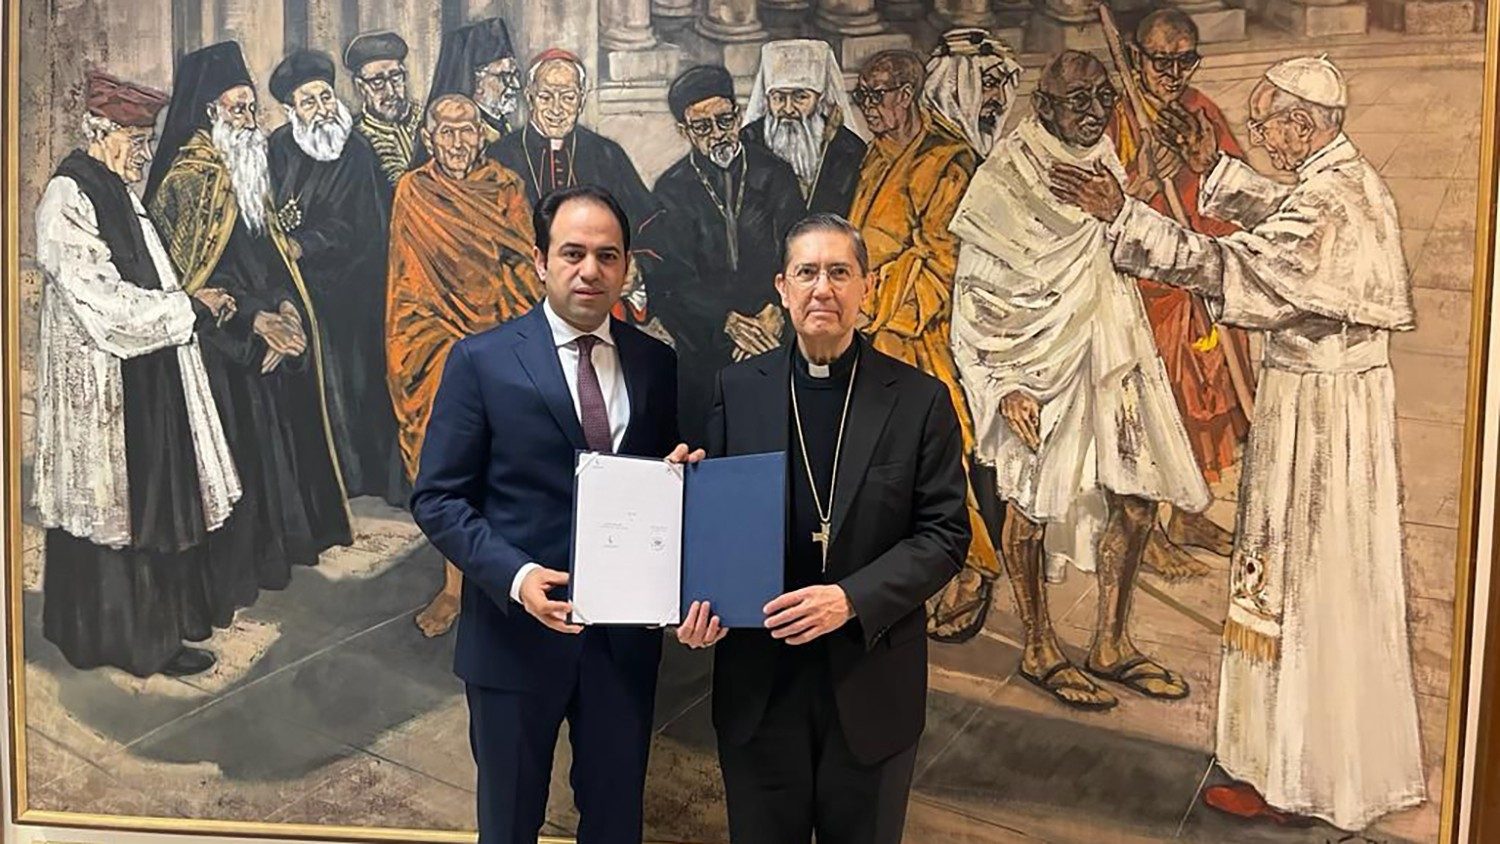 Новая веха в истории мусульманско-католических отношений: Ватикан подписал соглашение с Мусульманским советом старейшин